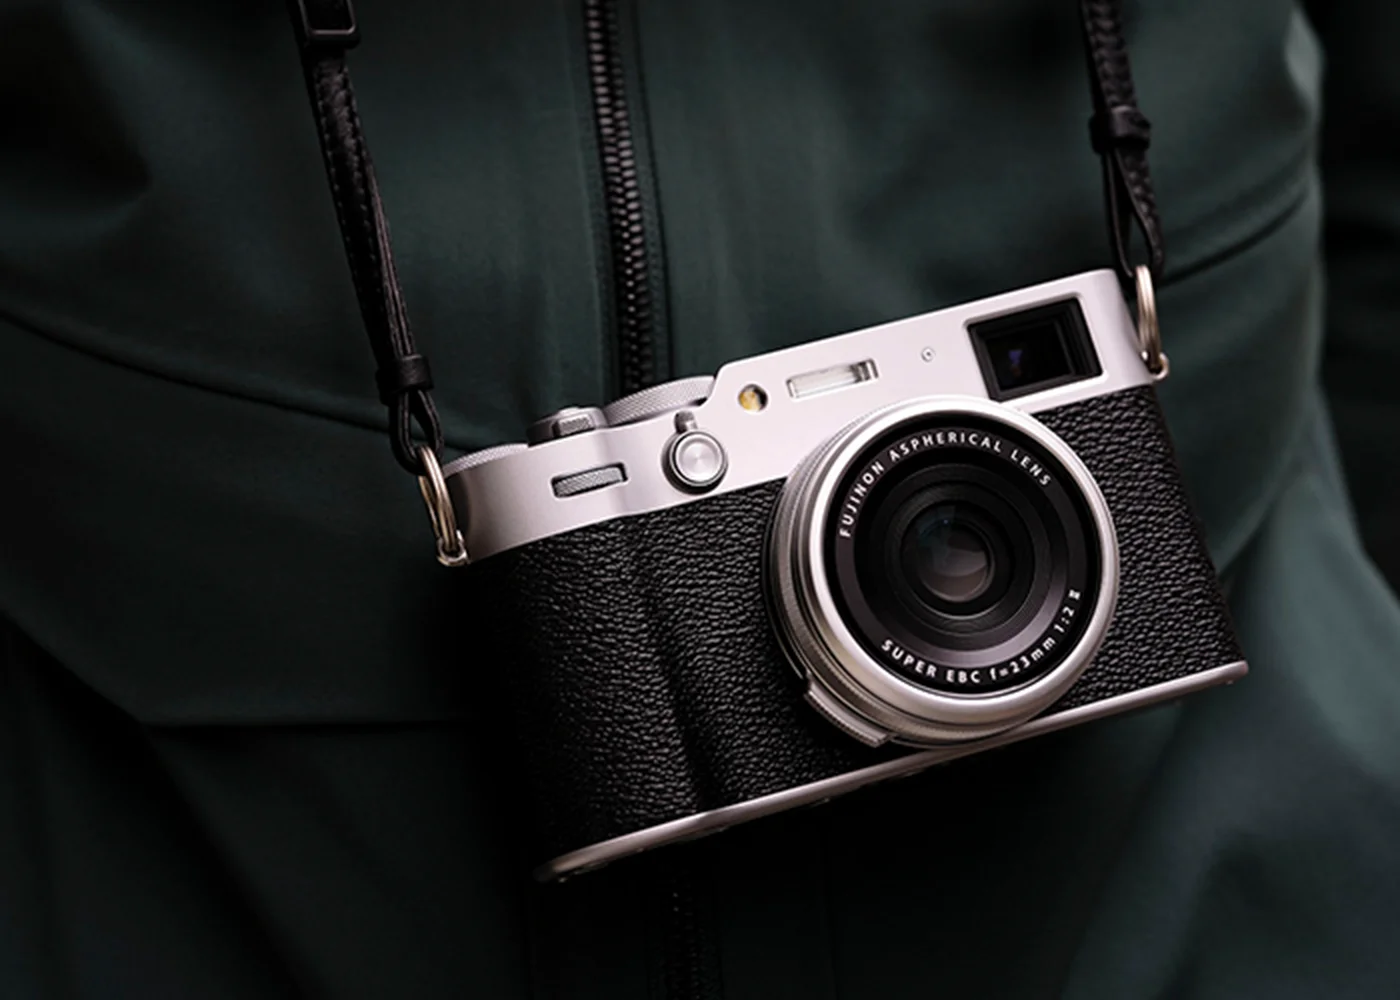 數位相機 X100 成功引領復古潮 Fujifilm 業績再創新高